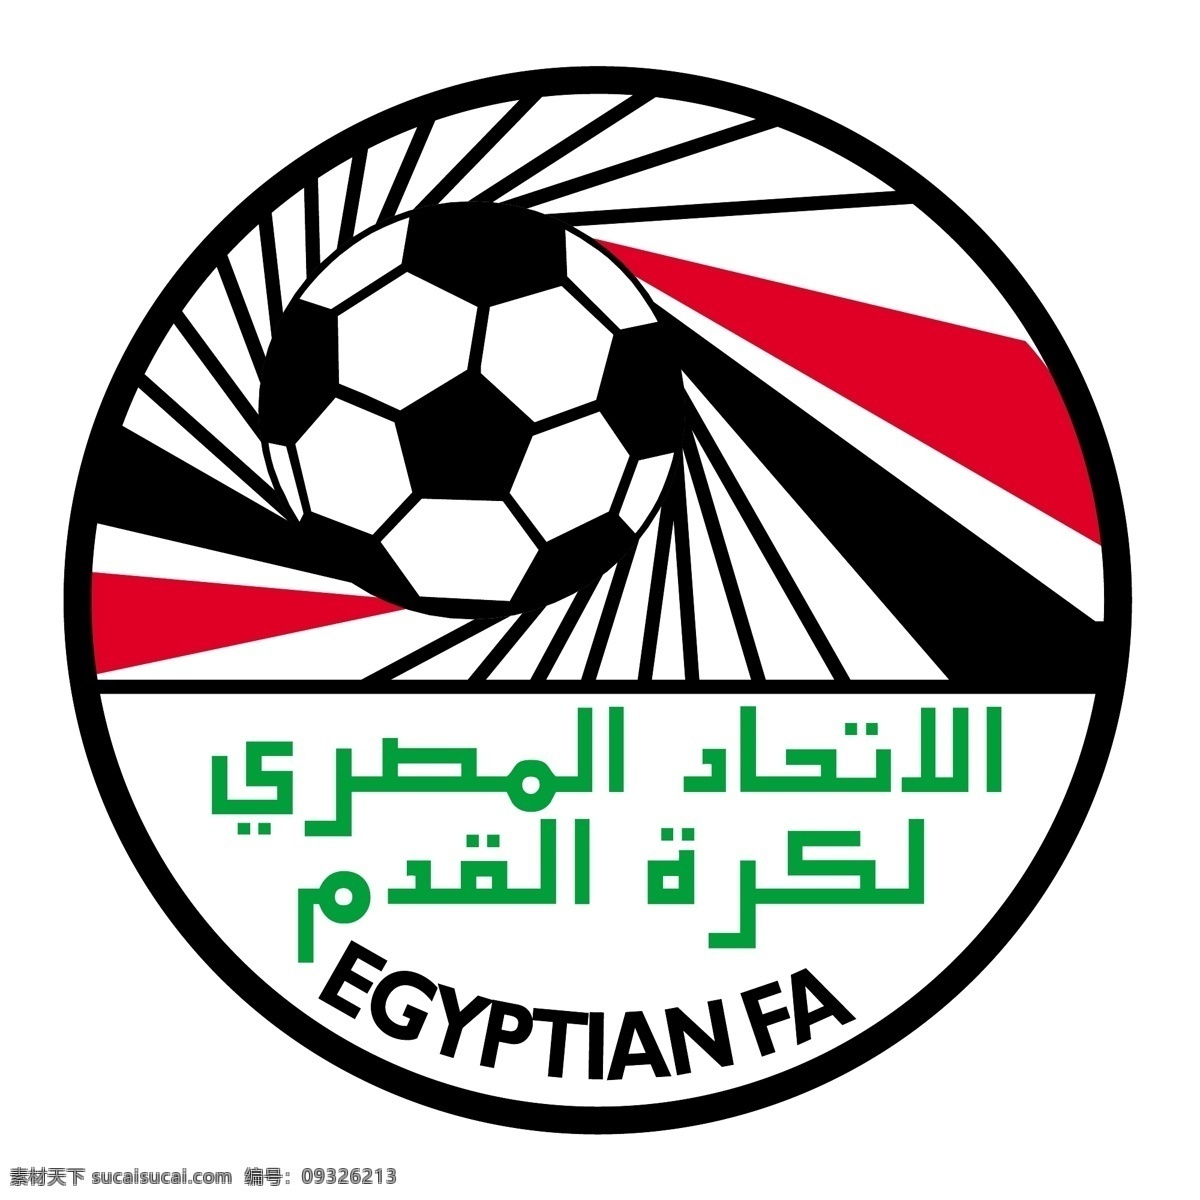 埃及 足球 协会 标识 公司 免费 品牌 品牌标识 商标 矢量标志下载 免费矢量标识 矢量 psd源文件 logo设计